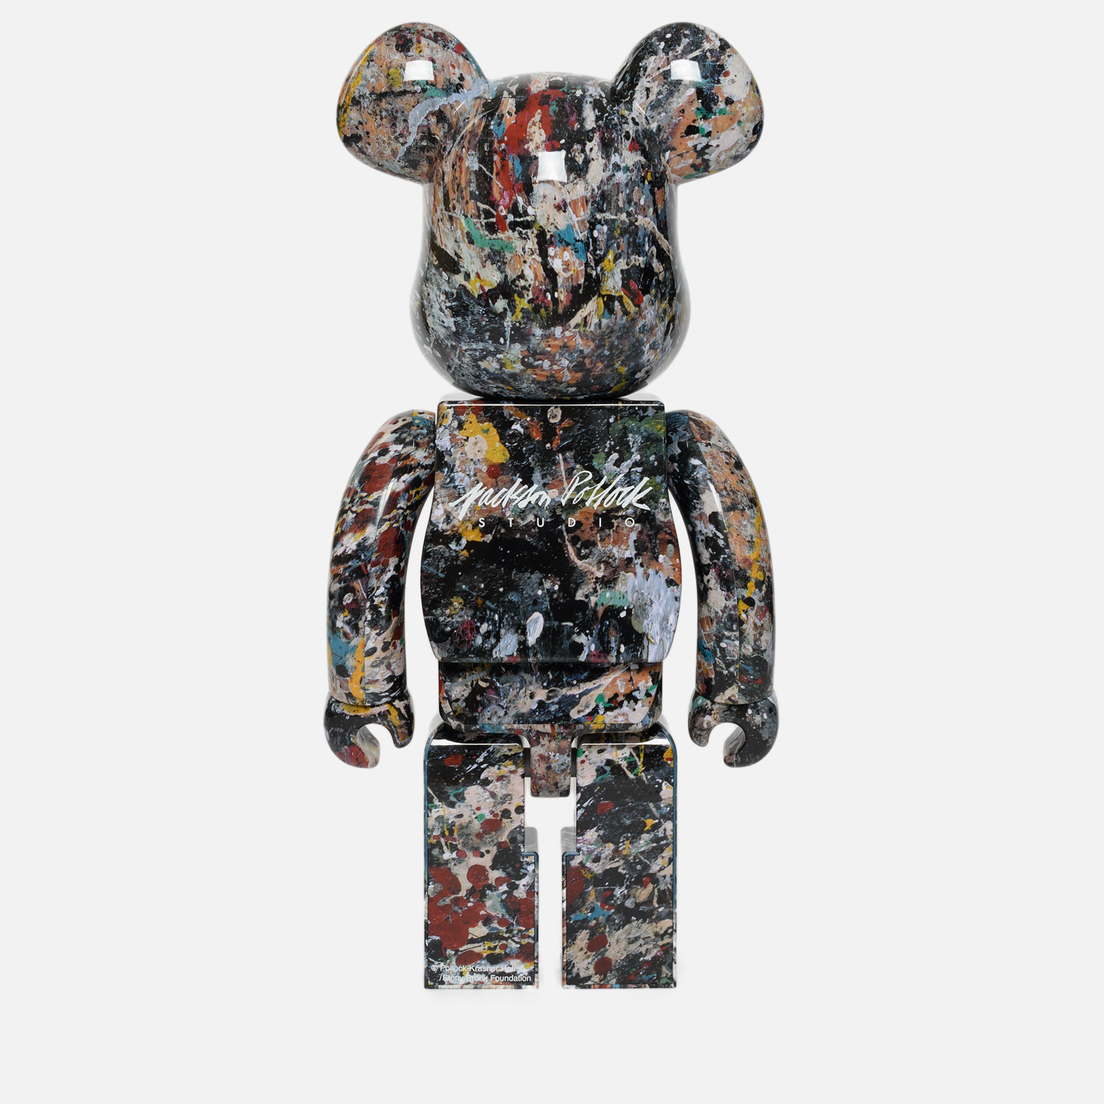 Medicom Toy Игрушка Bearbrick Jackson Pollock Ver. 2.0 1000%